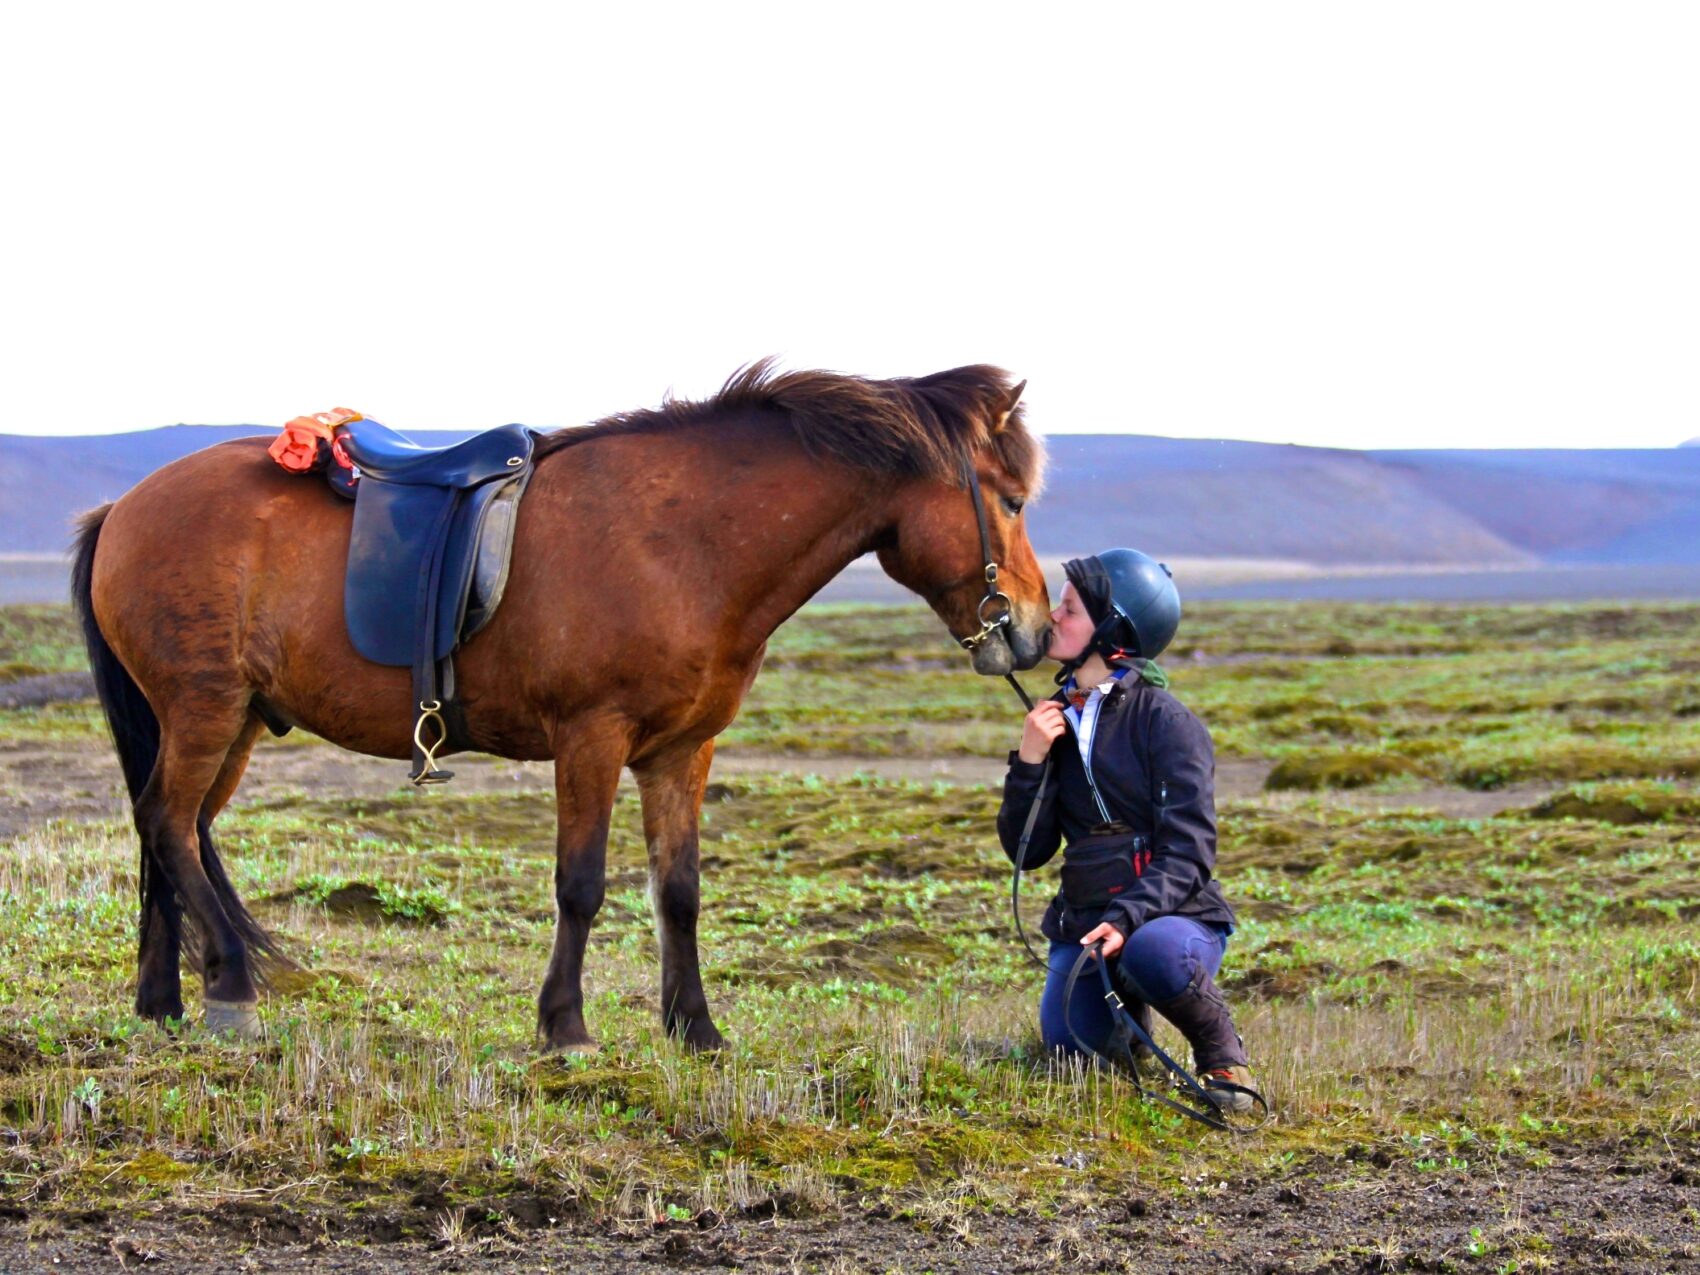 Reiten Island mit Eldhestar; 
Kind kniet vor Islandpferd und küsst dessen Nüstern. Das Islandpferd steht seitlich und hat einen Sattel und Zaumzeug an.